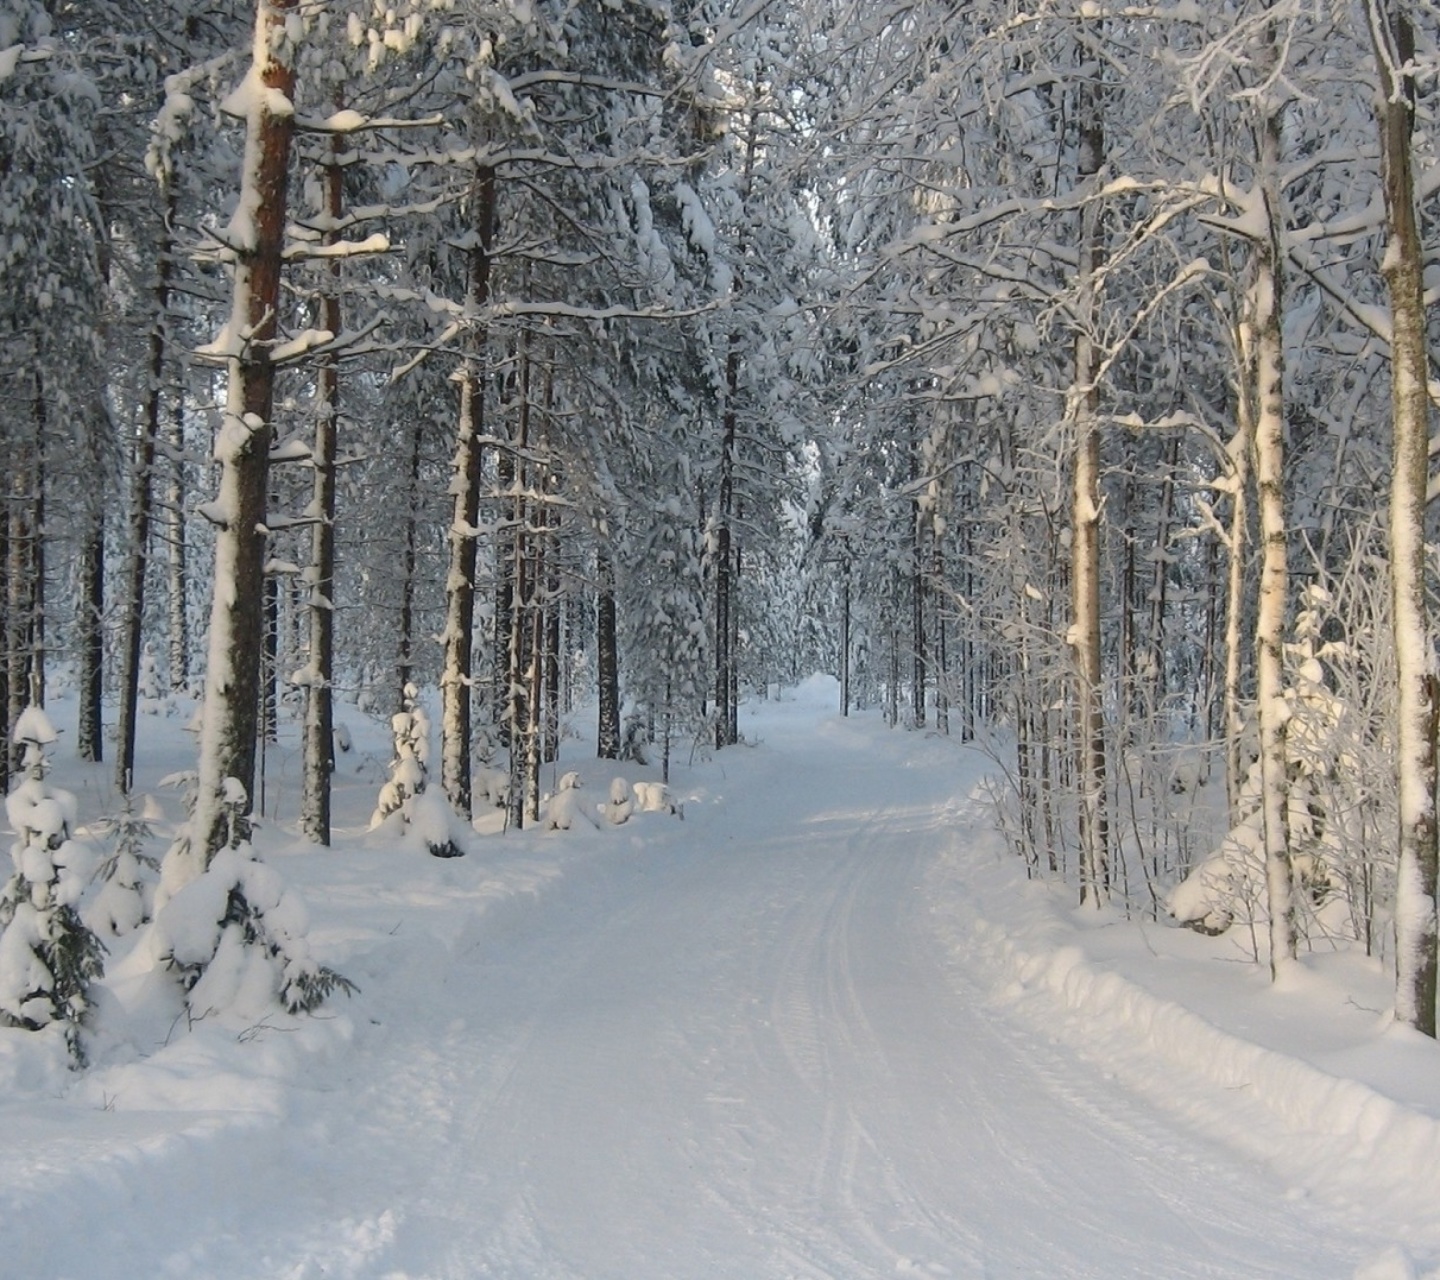 Winter snowy forest screenshot #1 1440x1280